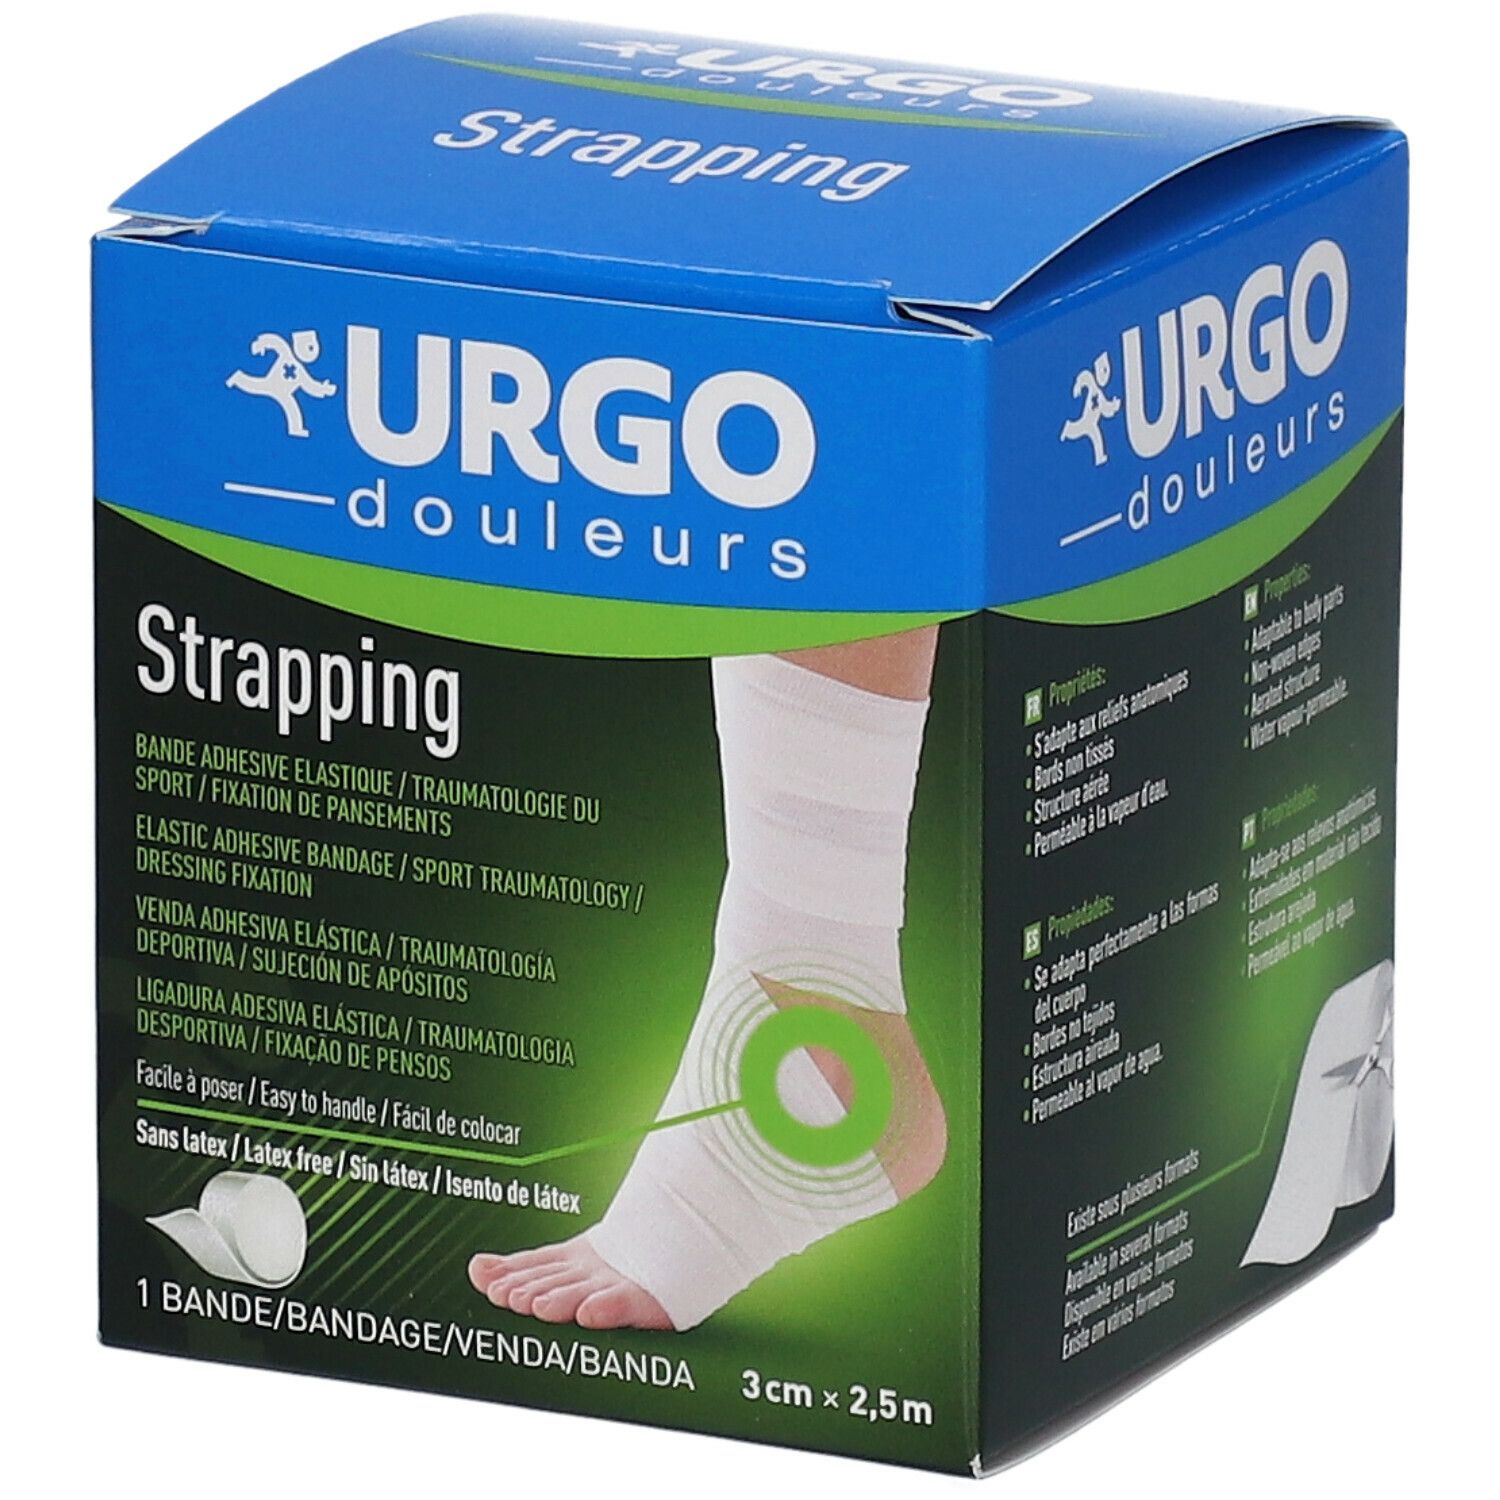 URGO Strapping Bande élastique adhésive de contention 2,5 m x 3 cm 1 pc(s)  - Redcare Pharmacie